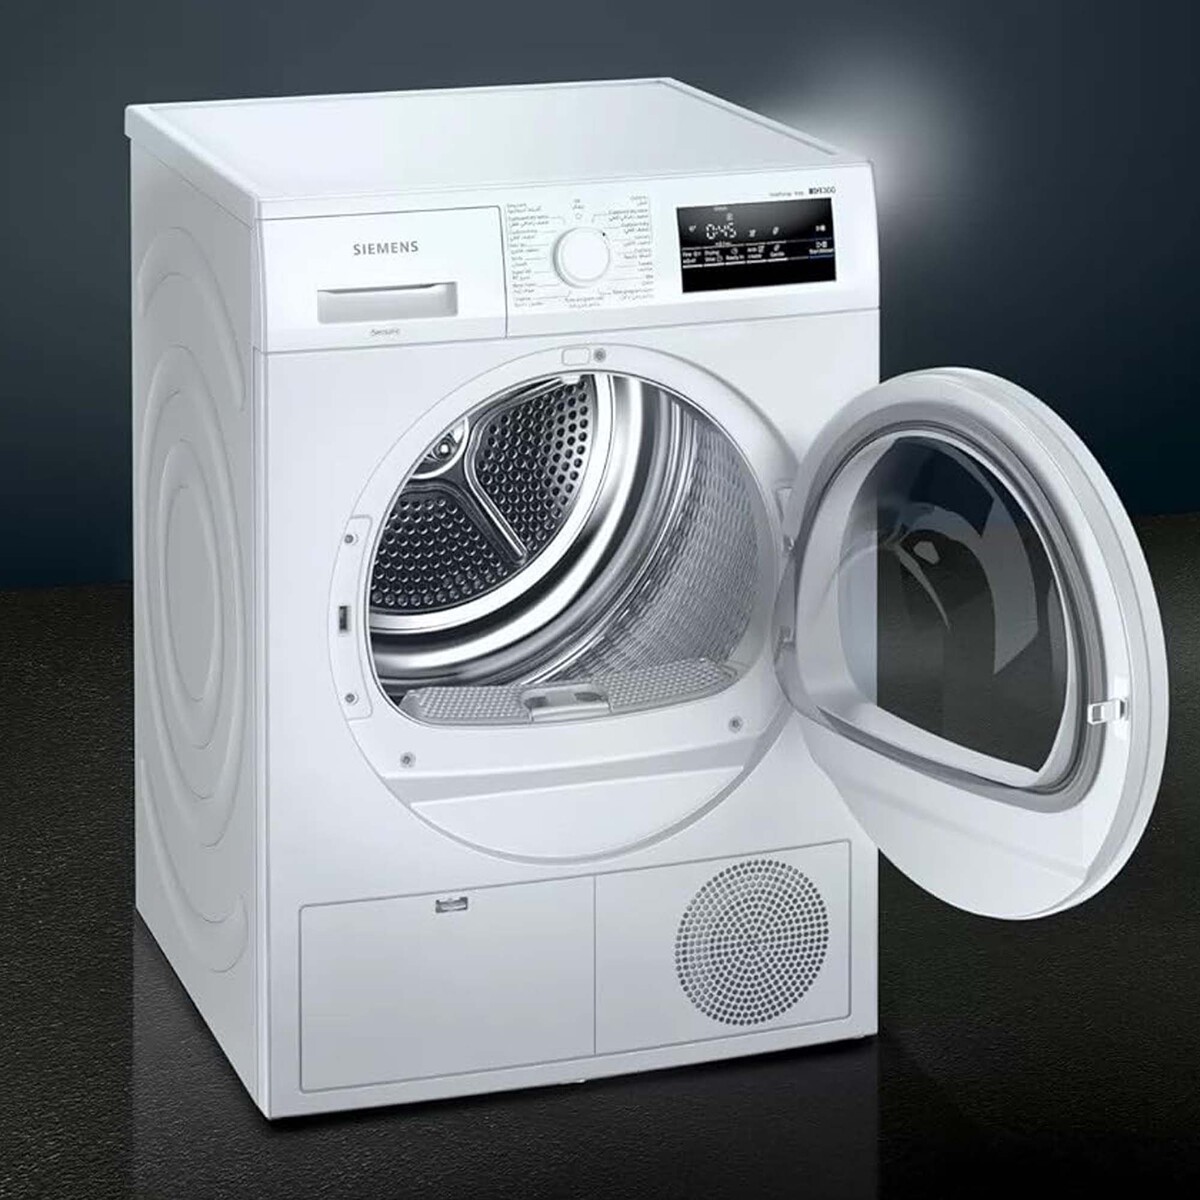 Siemens Front Load Tumble Dryer, 8 Kg, White, WT45H212GC